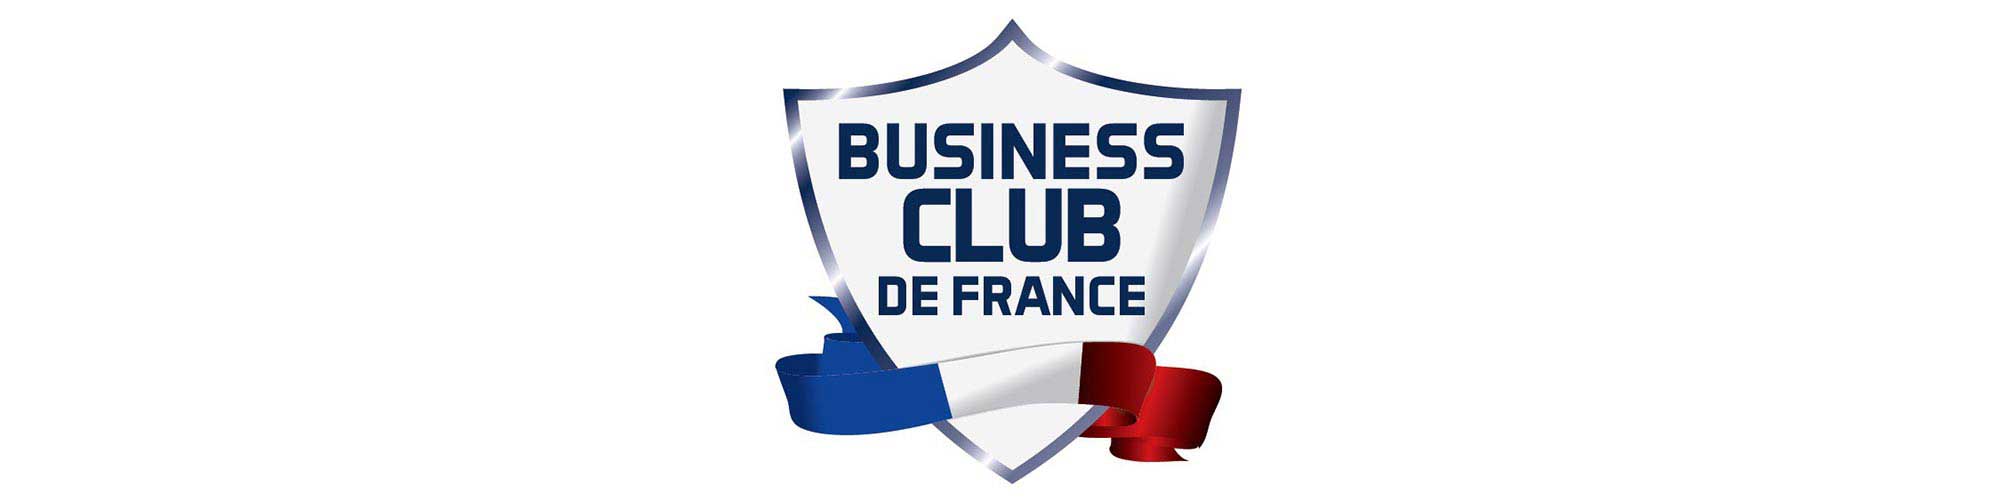 Business Club de France